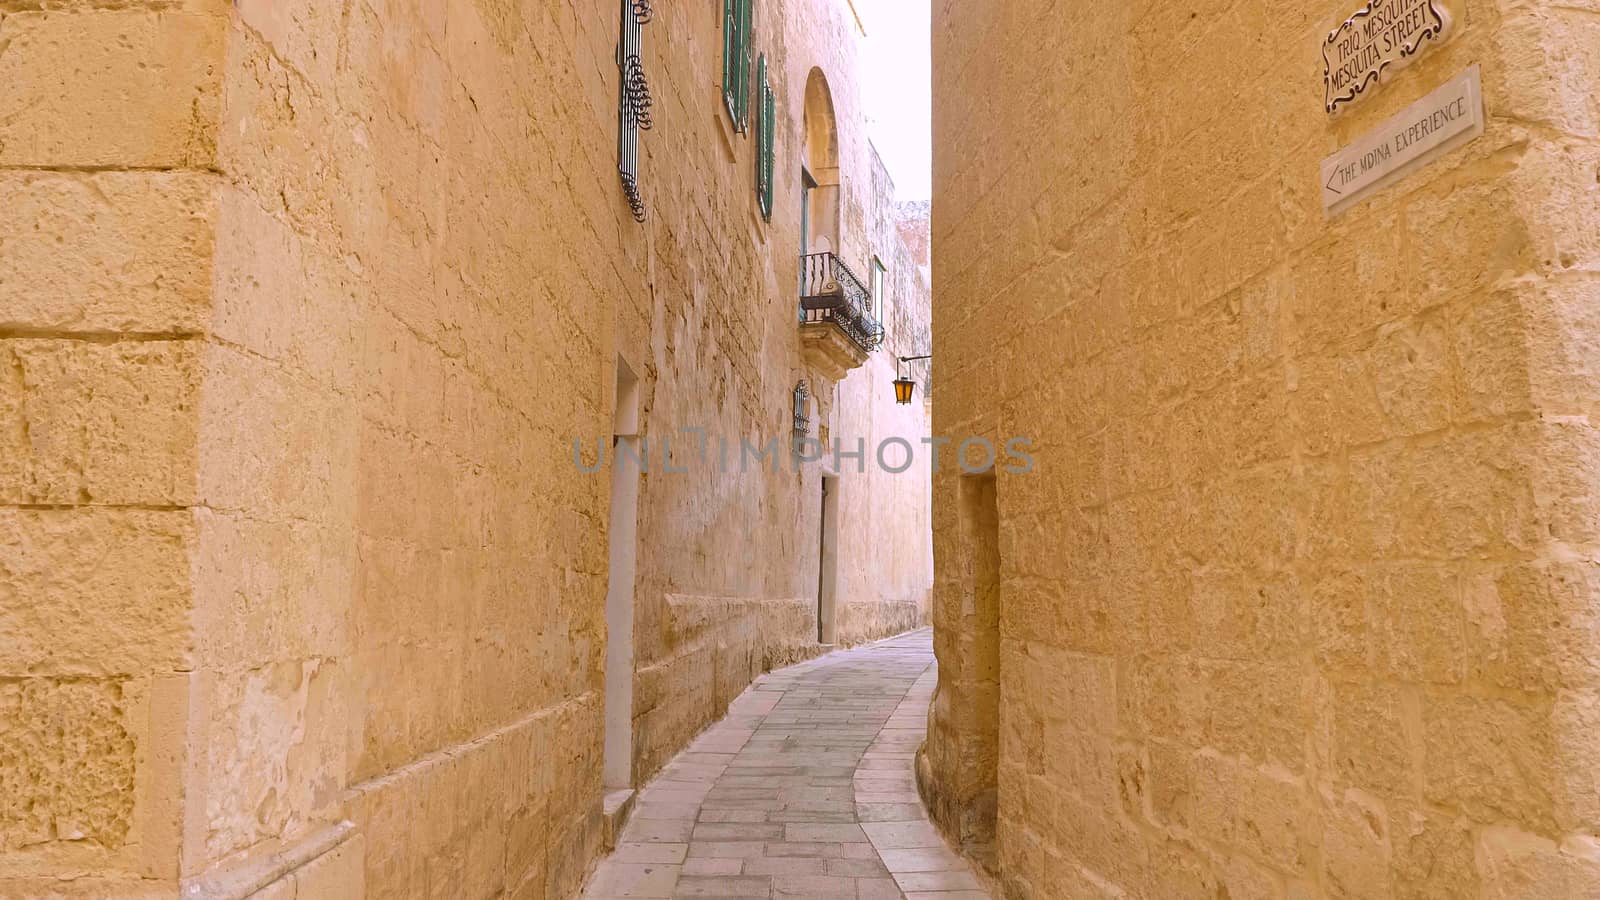 The narrow streets of Mdina in Malta - travel photography